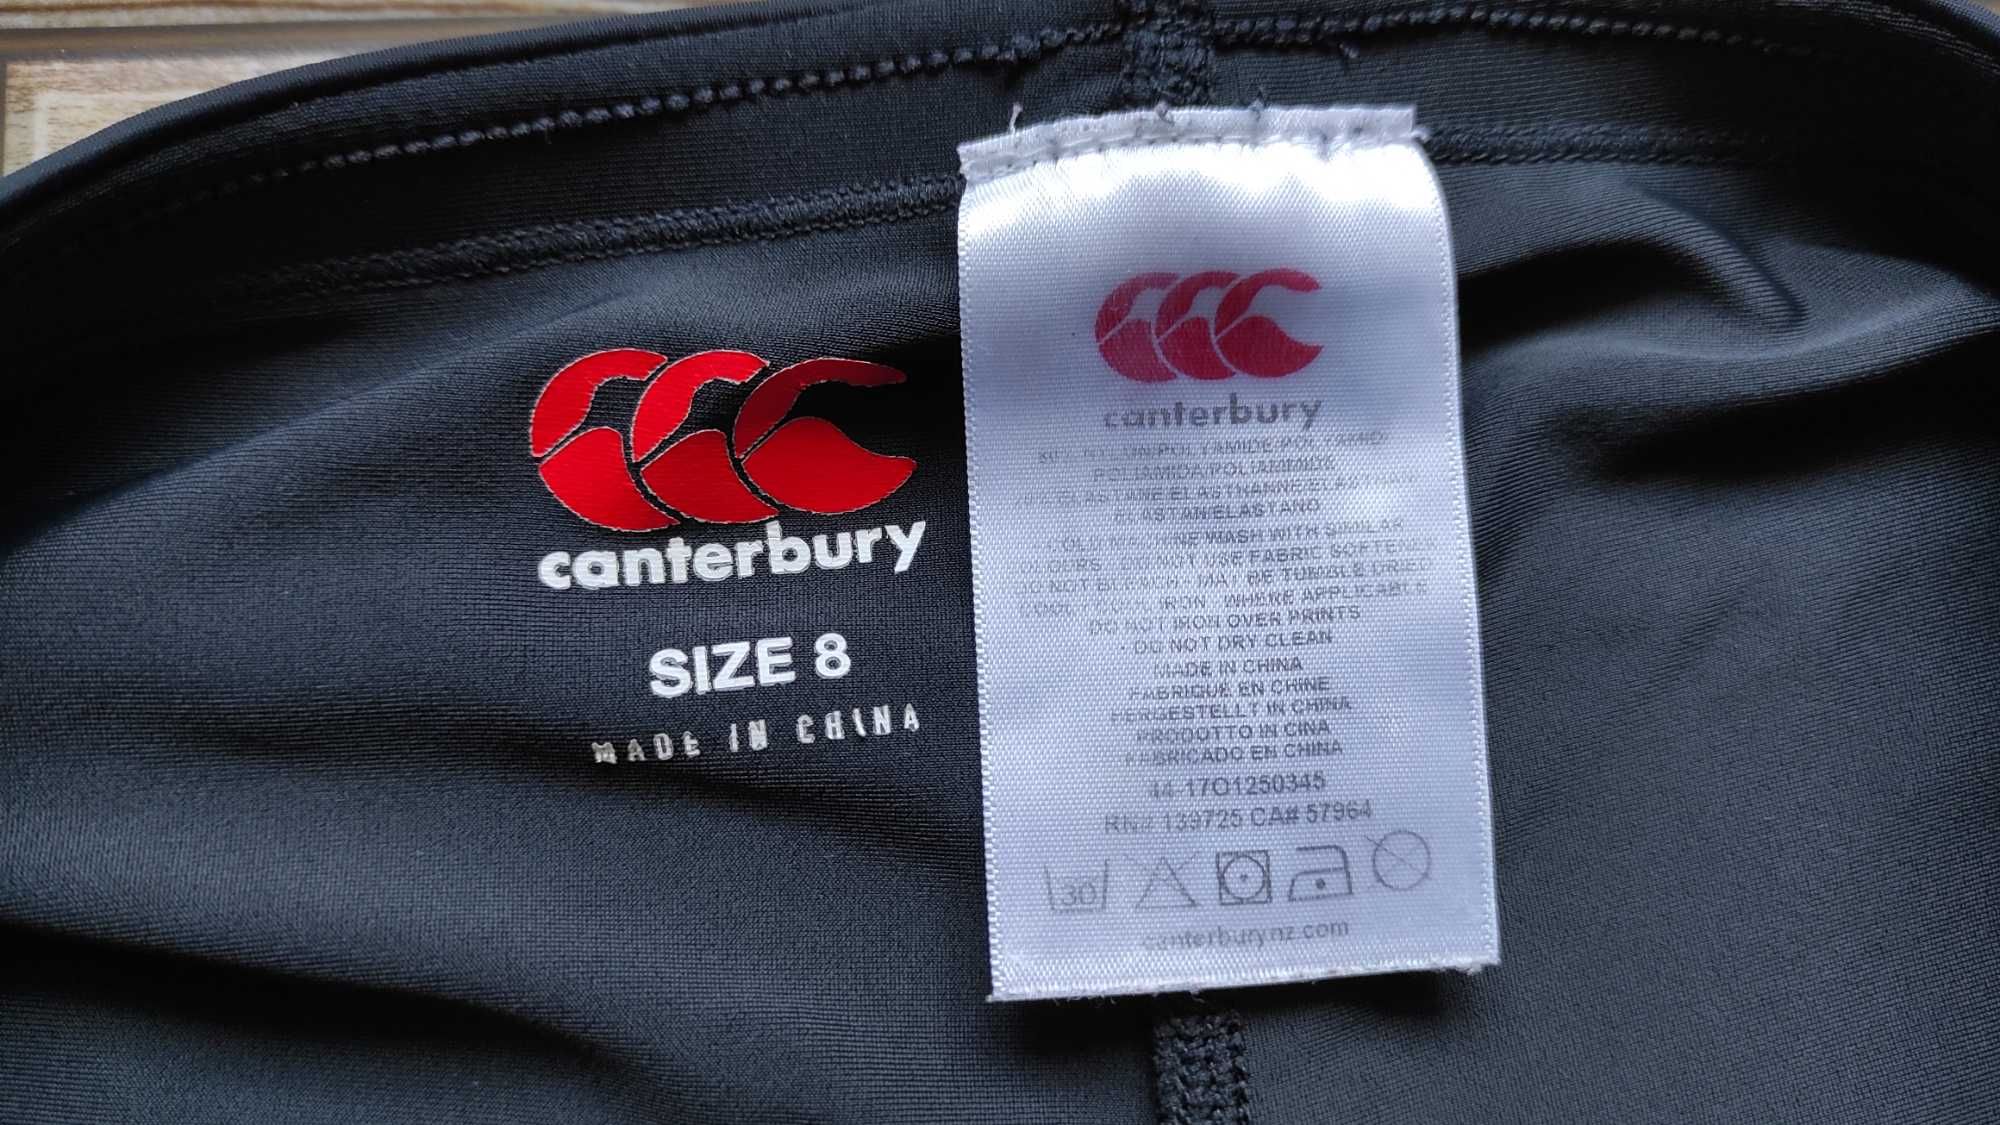 Спортивная юбка + шорты 2в1 Canterbury